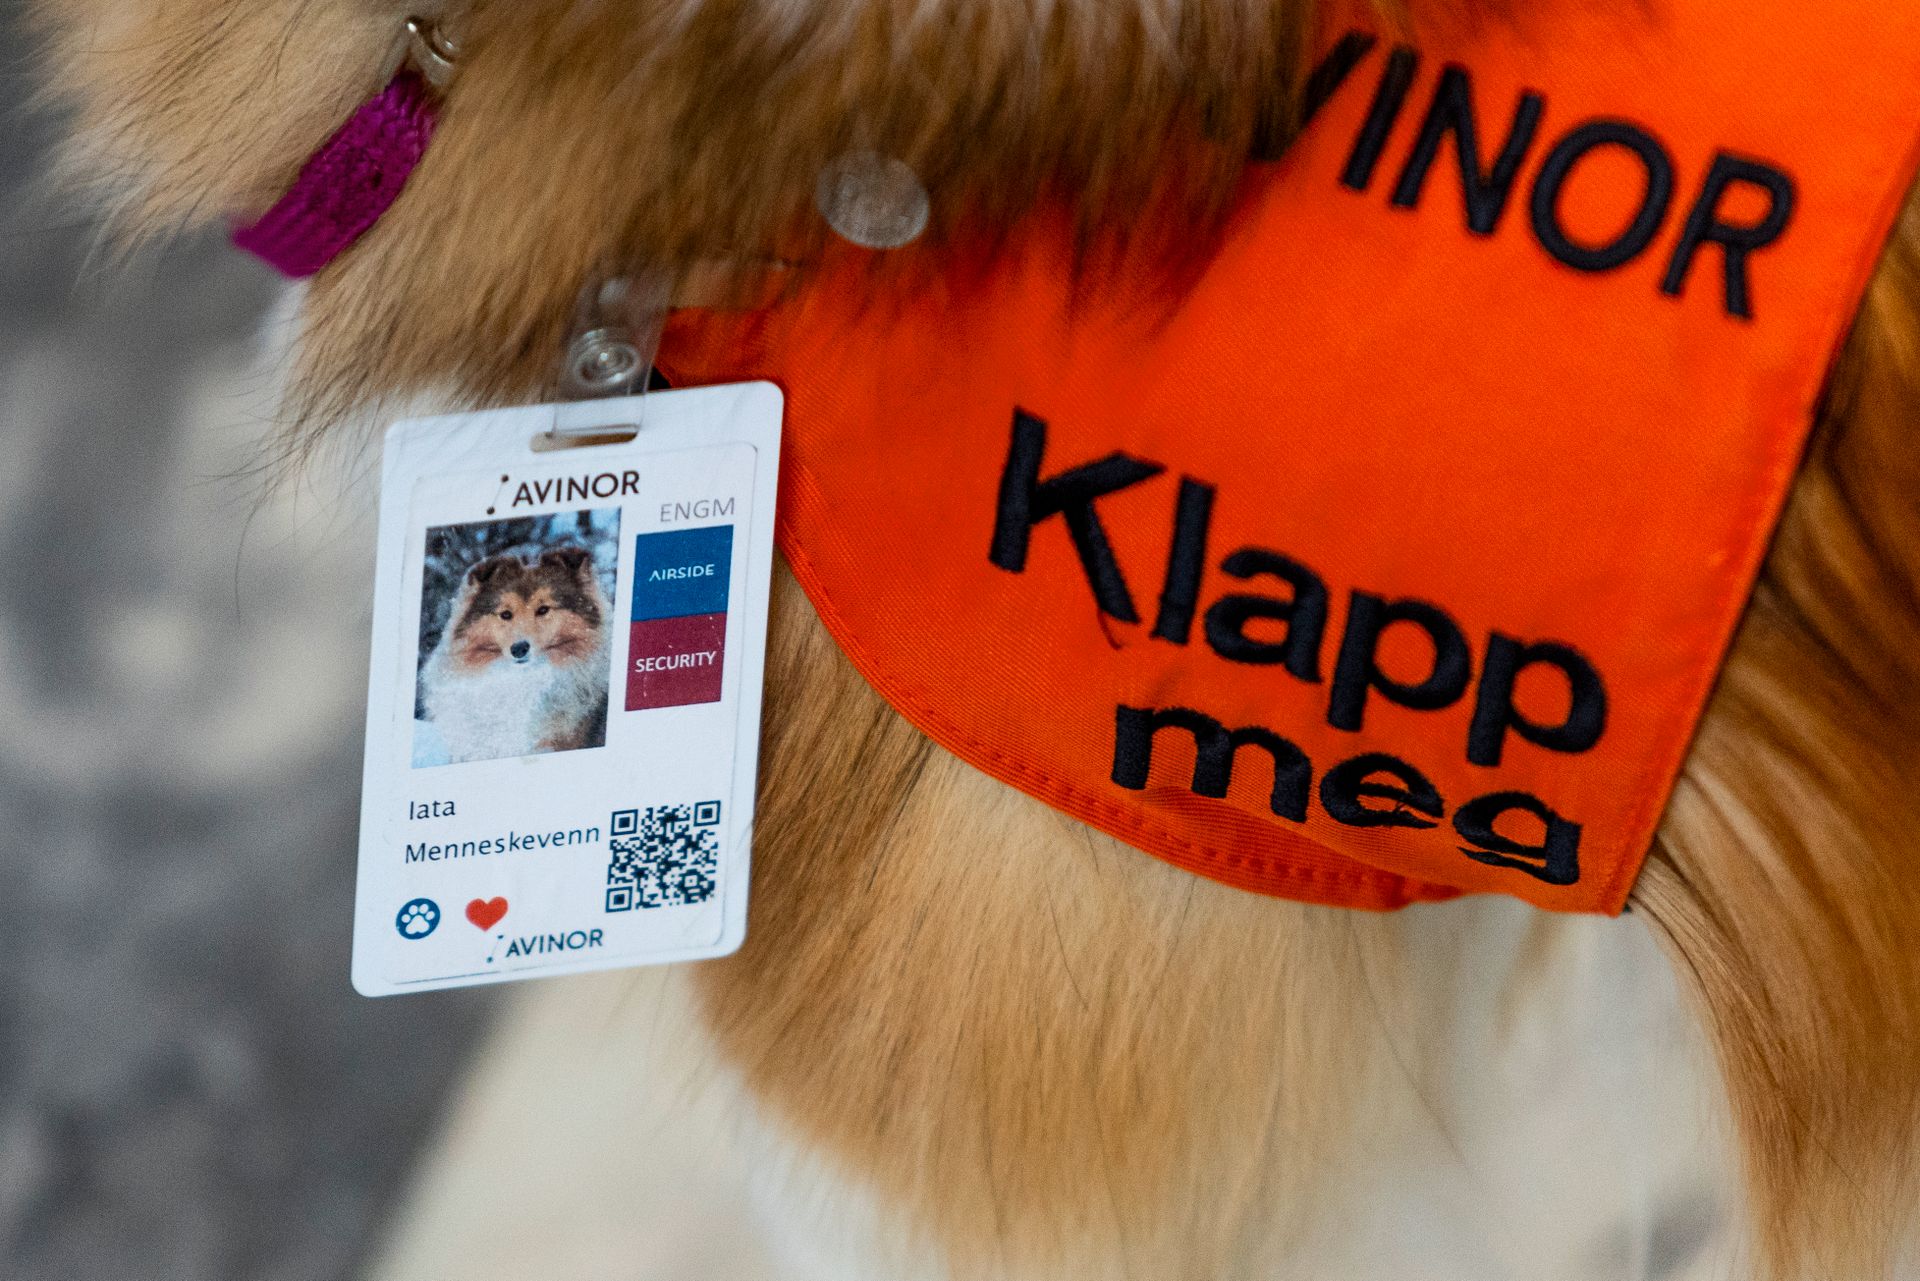 Et nærbilde av en hund med et flyplass-adgangskort med bilde hvor det står "Iata, menneskevenn"